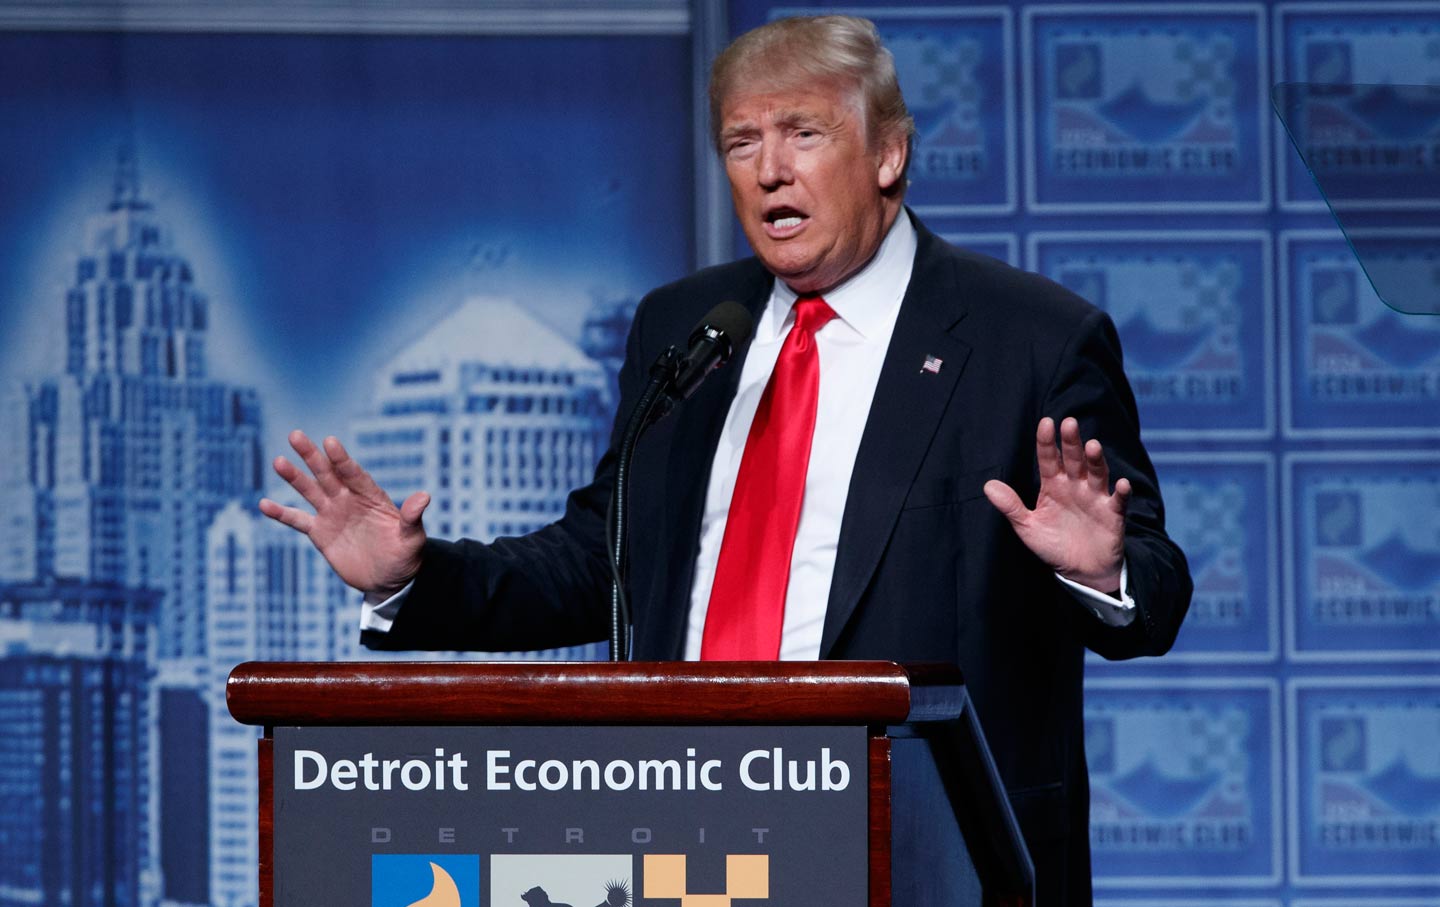 Trump speaks at Detroit Economic Club